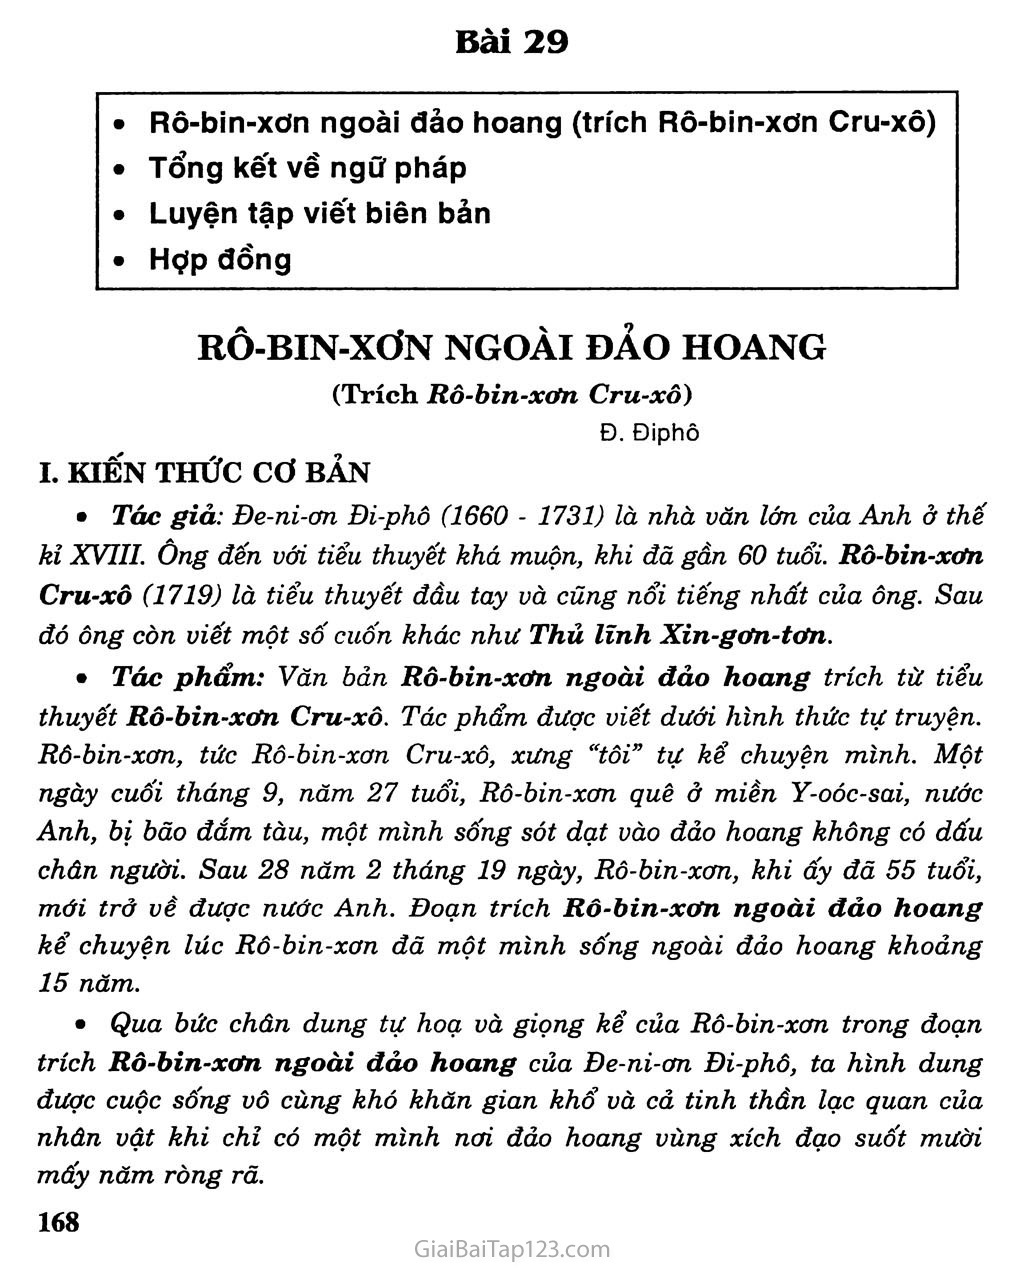 Rô - bin - xơn ngoài đảo hoang (trích Rô - bin - xơn Cru - xô) trang 1